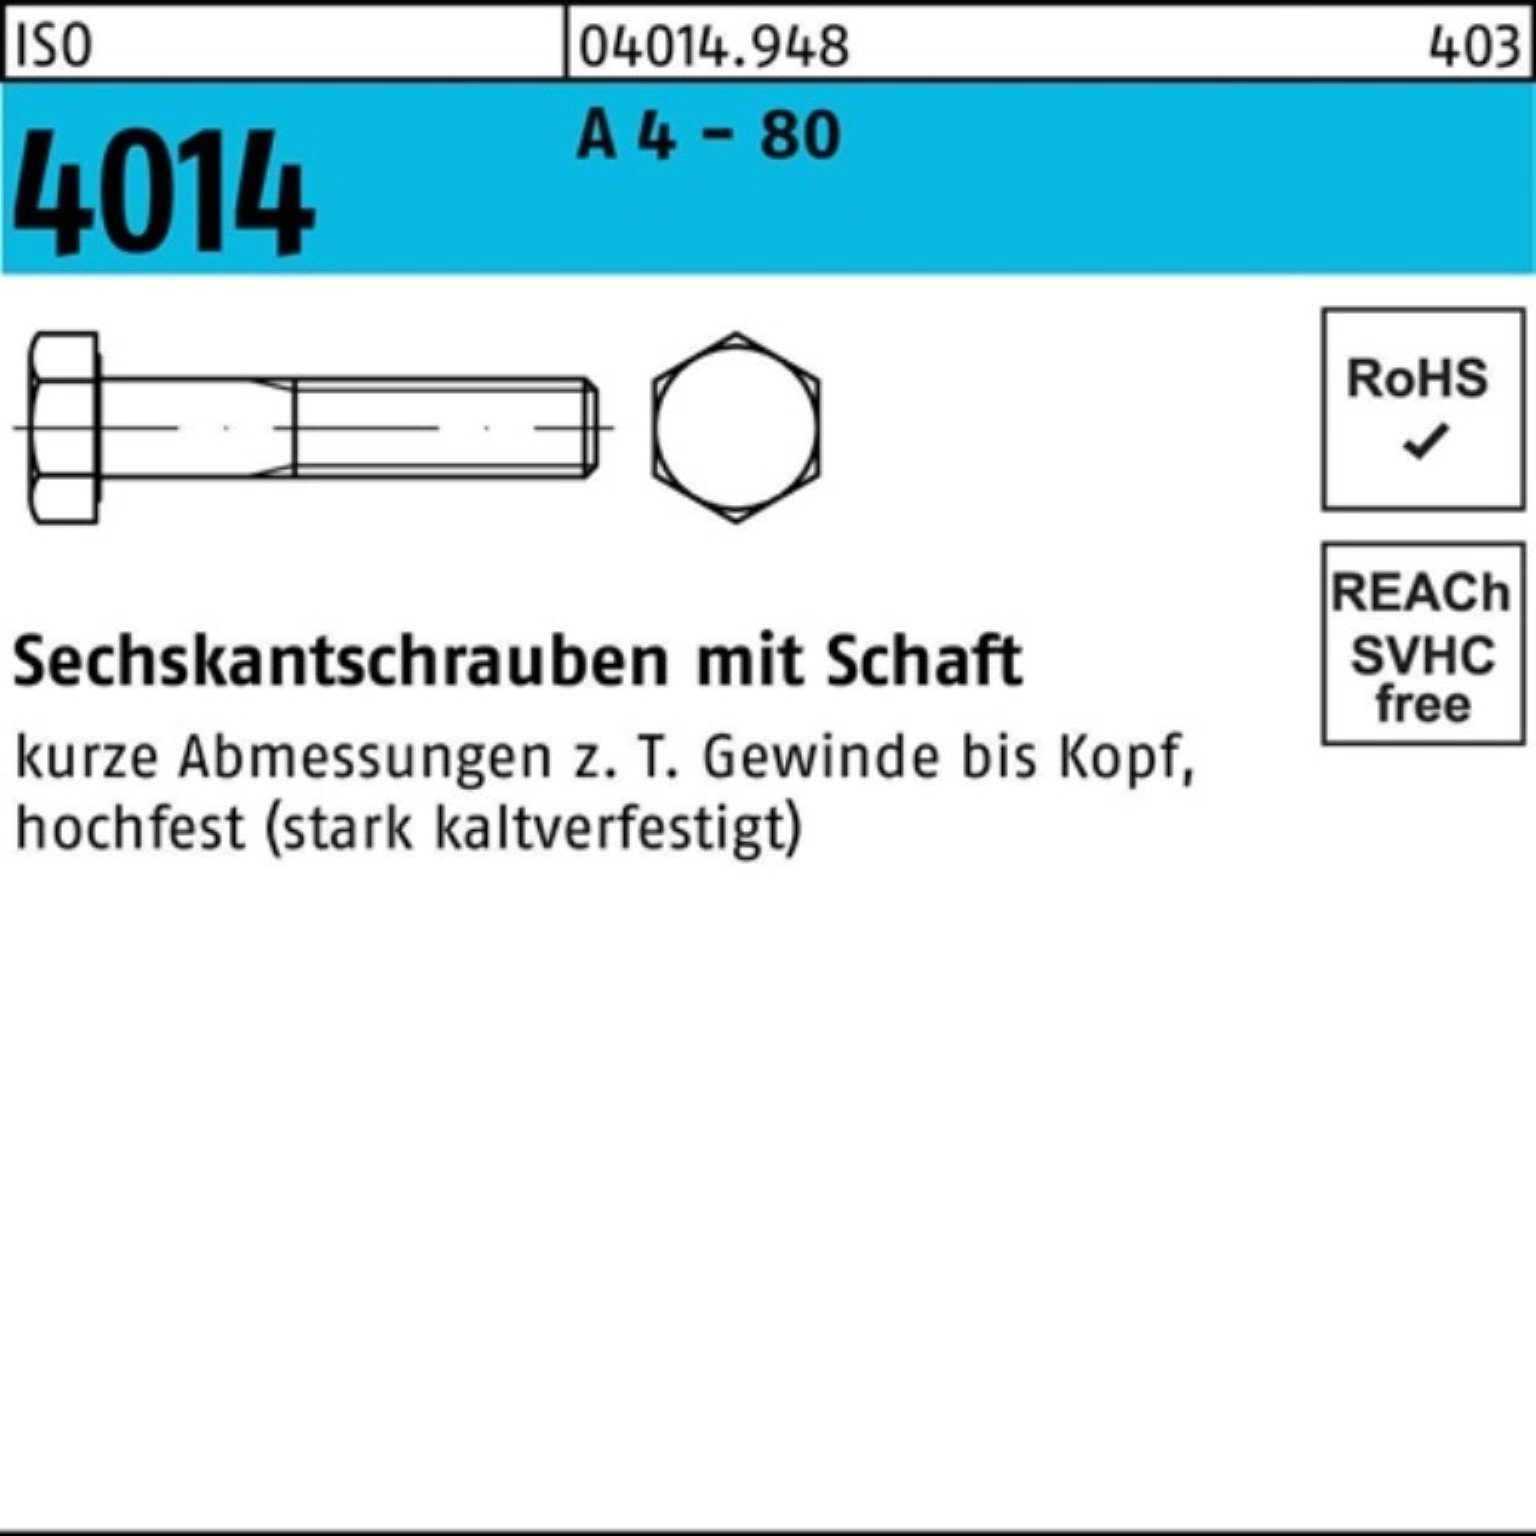 A Pack Sechskantschraube Schaft 4014 Stüc 4 100 M8x Bufab 80 40 100er - ISO Sechskantschraube